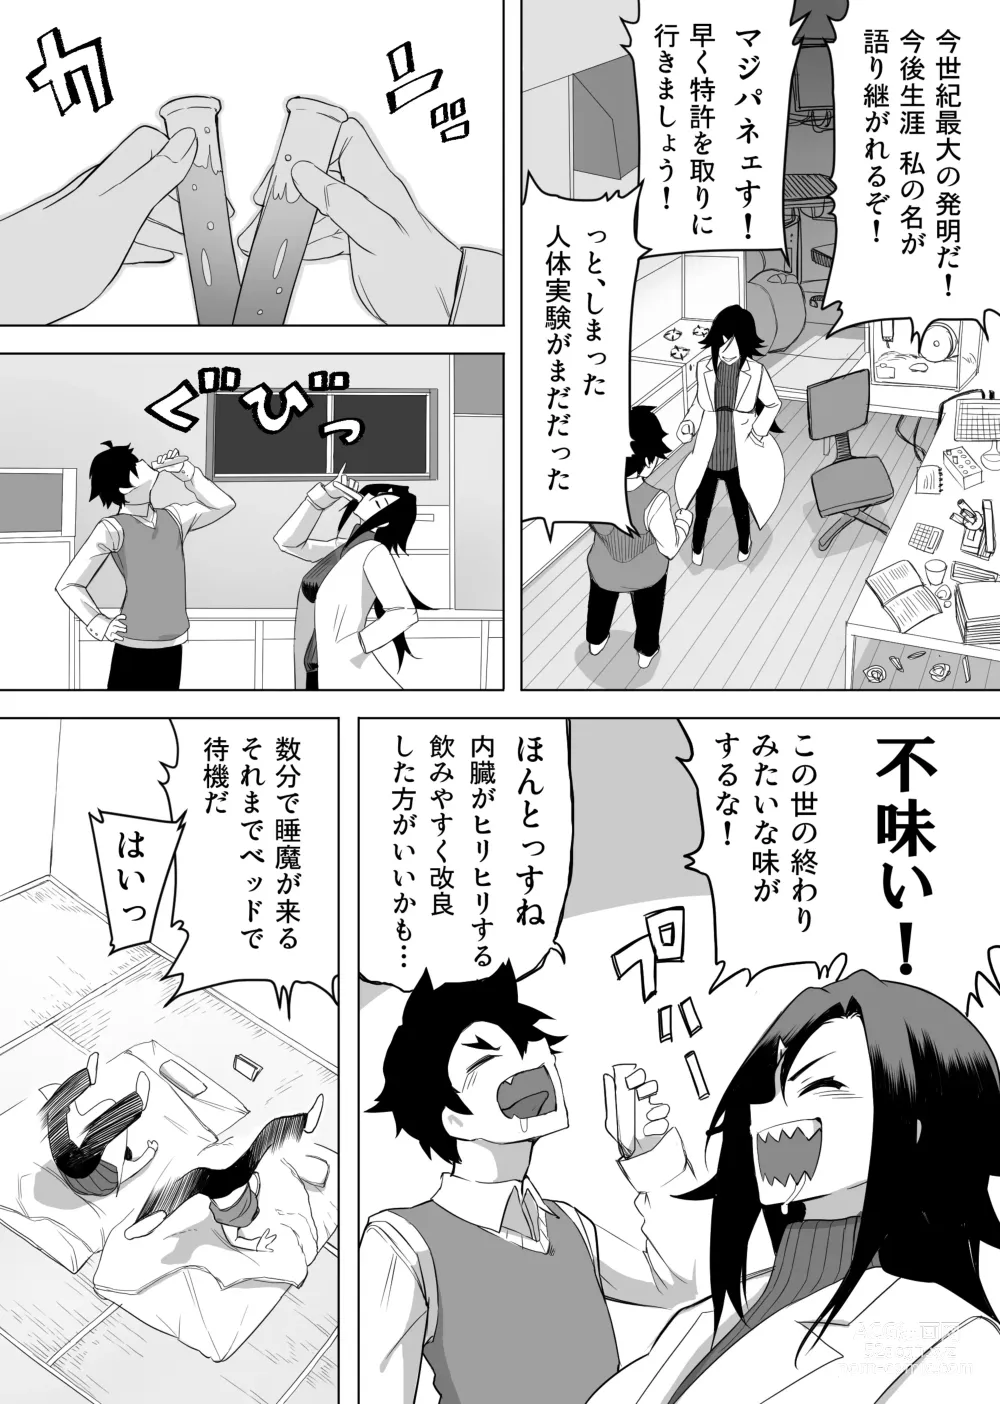 Page 4 of doujinshi Okusuri Tsukatte Seitenka Jikkuri Tappuri Kensa Shite